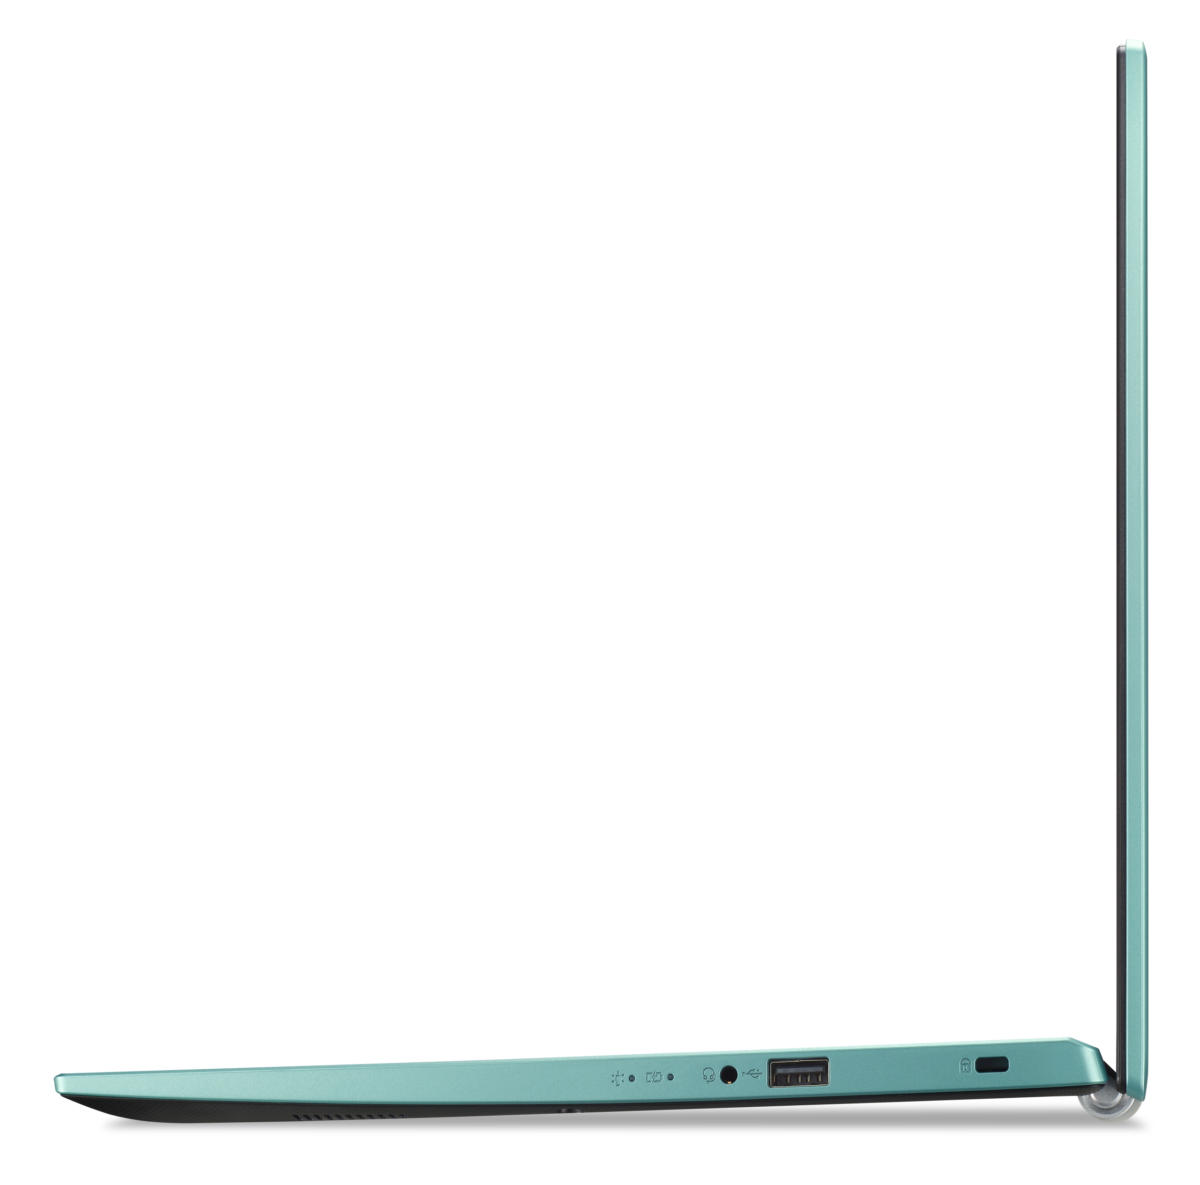 NX.A9DAA.001 - $290 - Acer Aspire 1 A115-32-C44C Celeron® N4500 1.1GHz  128GB eMMC 4GB 15.6 (1920x1080) WIN10 S ELECTRIC BLUE